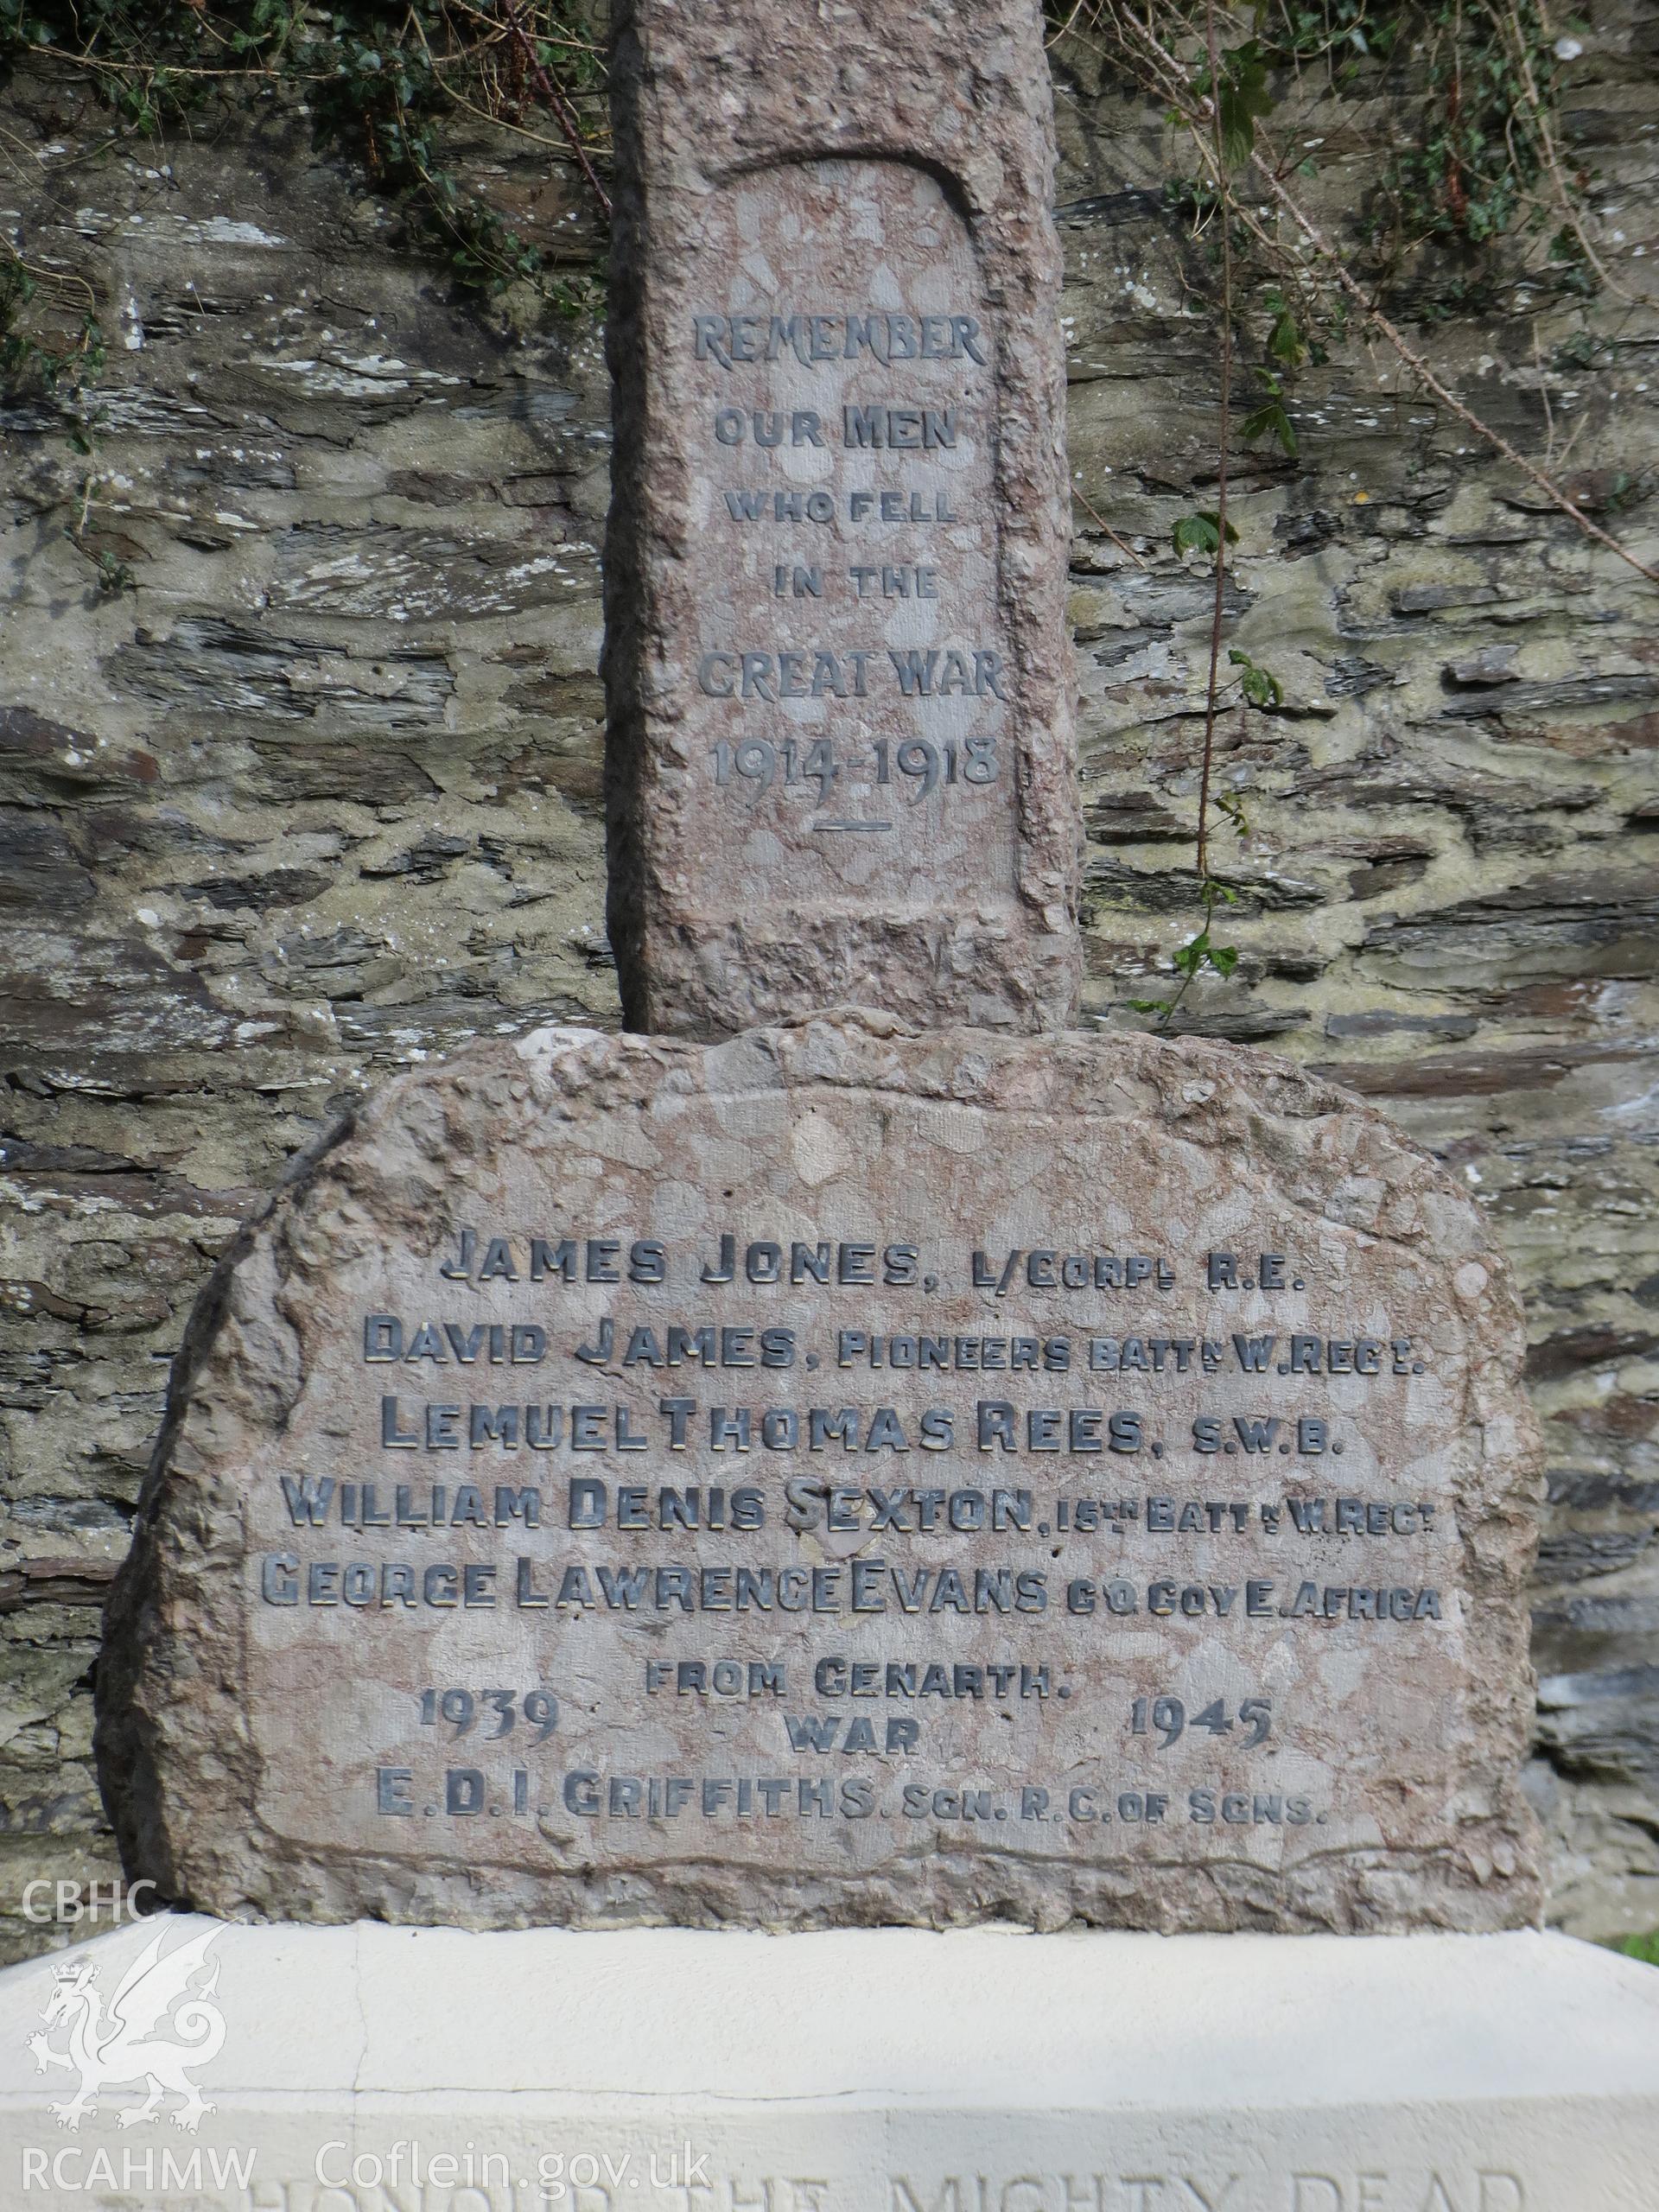 Close-up view of memorial inscription.